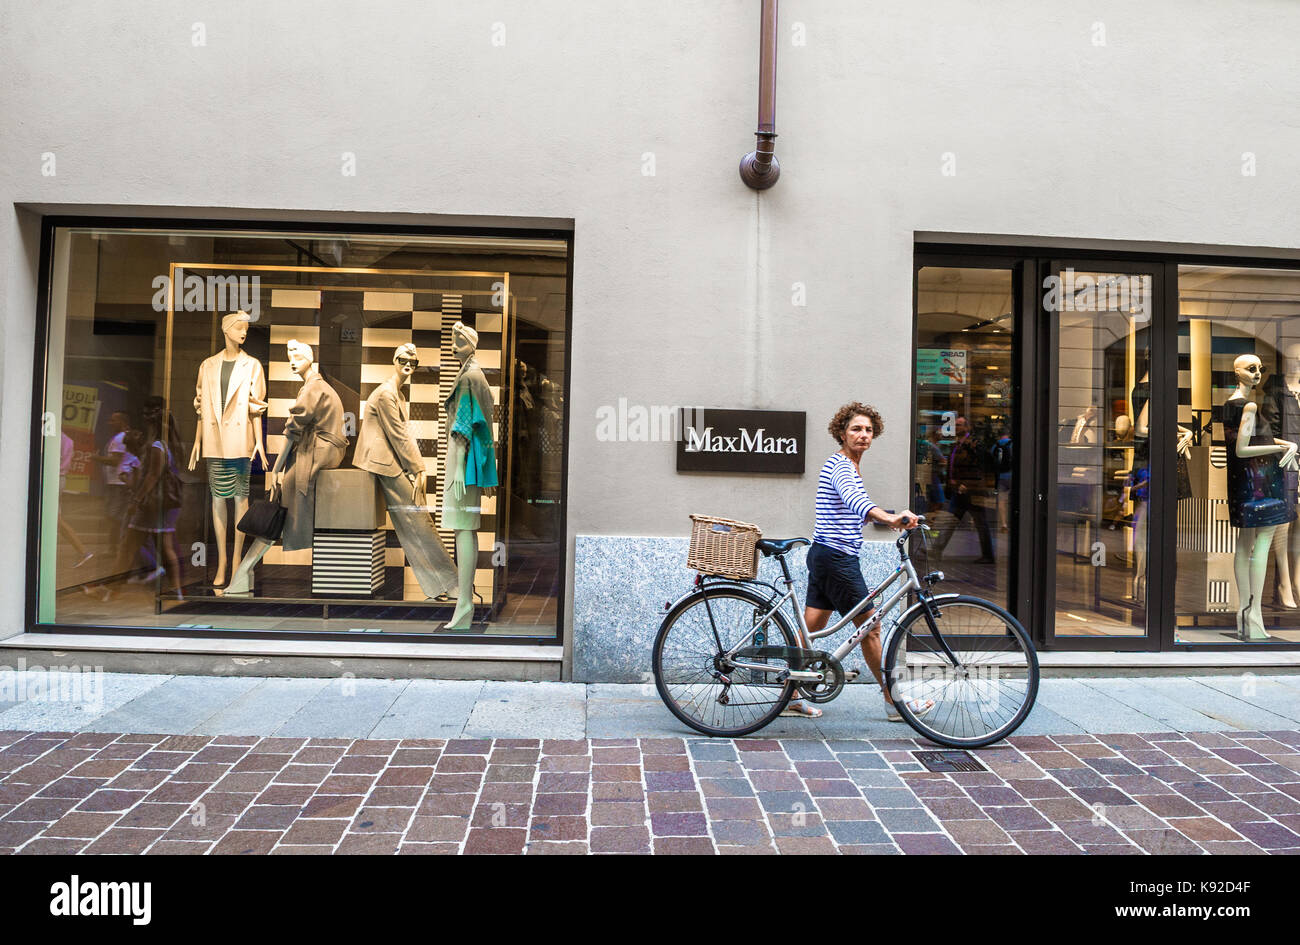 Cycliste féminine marcher son vélo devant une boutique de vêtements MaxMara. Banque D'Images